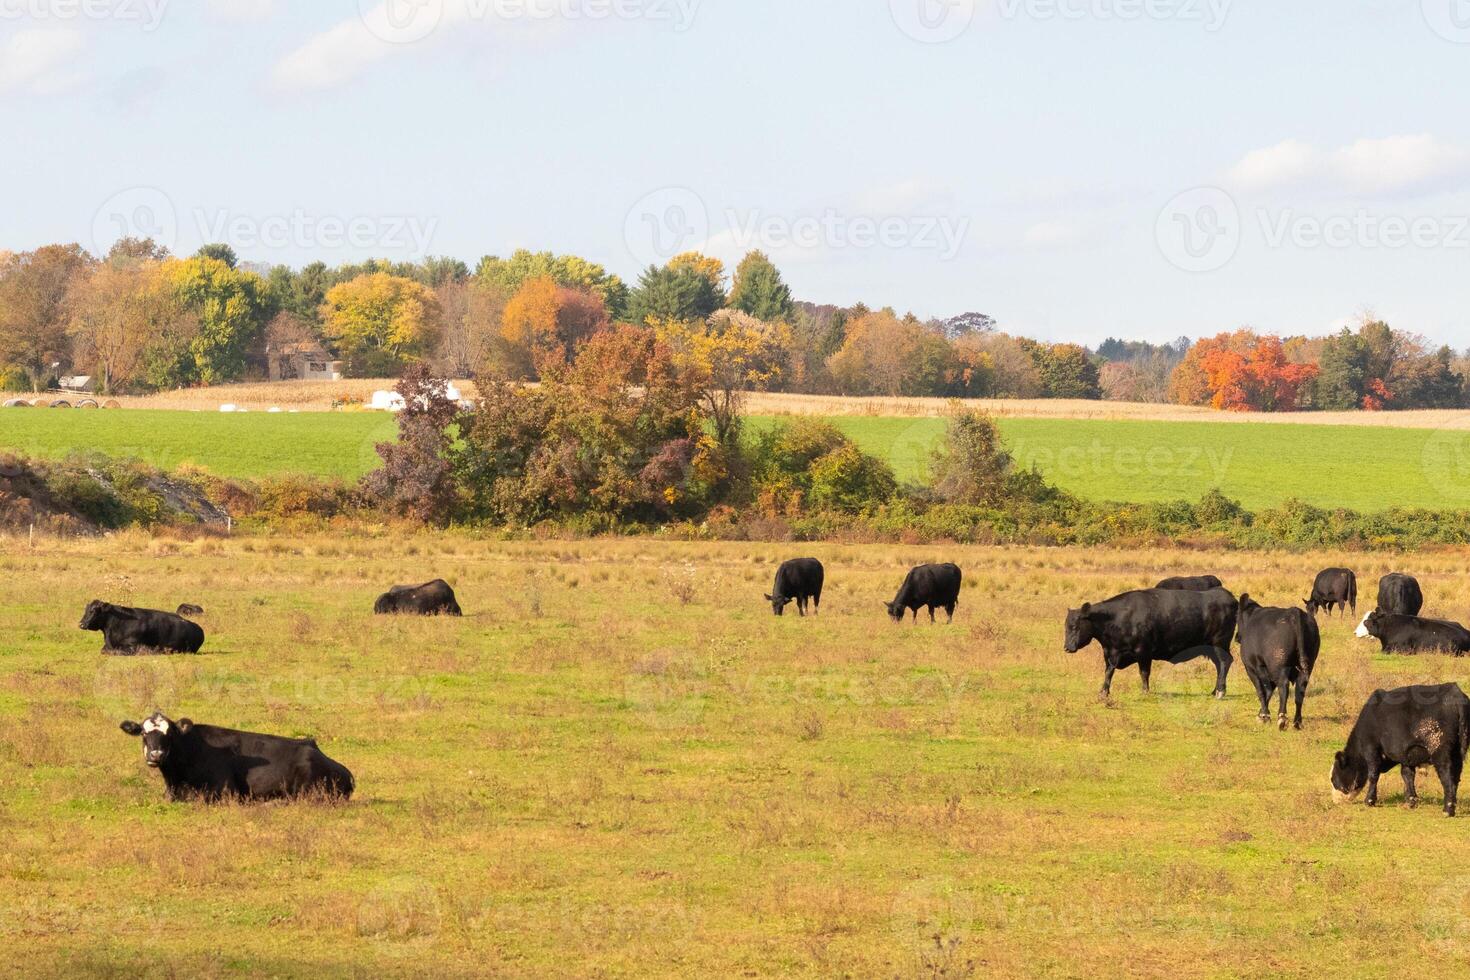 deze mooi veld- van koeien werkelijk shows de bouwland en hoe Open deze Oppervlakte is. de zwart runderen uitgerekt aan de overkant de mooi groen weide uit begrazing met de bewolkt lucht bovenstaande. foto